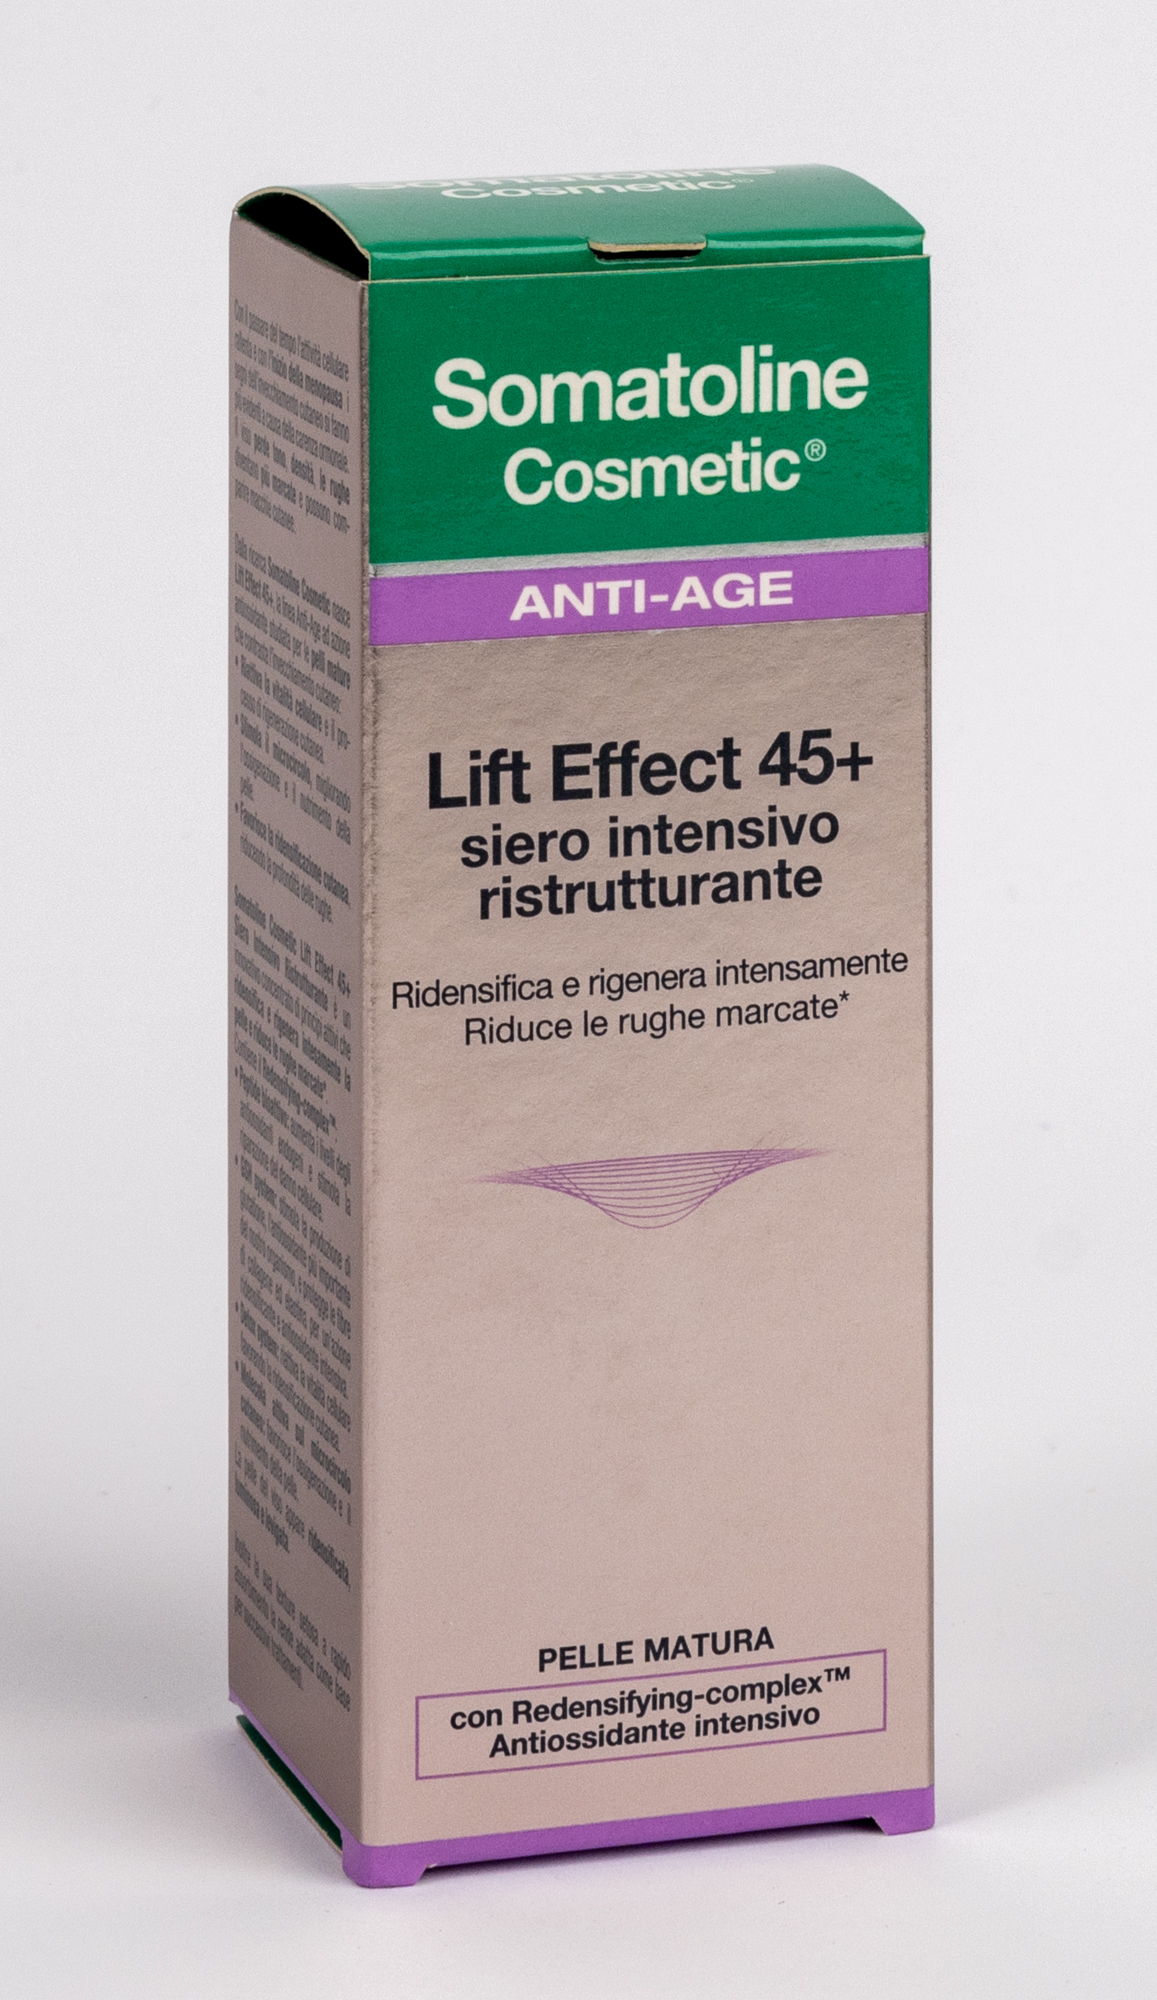 Somatoline Lift Effect 45+